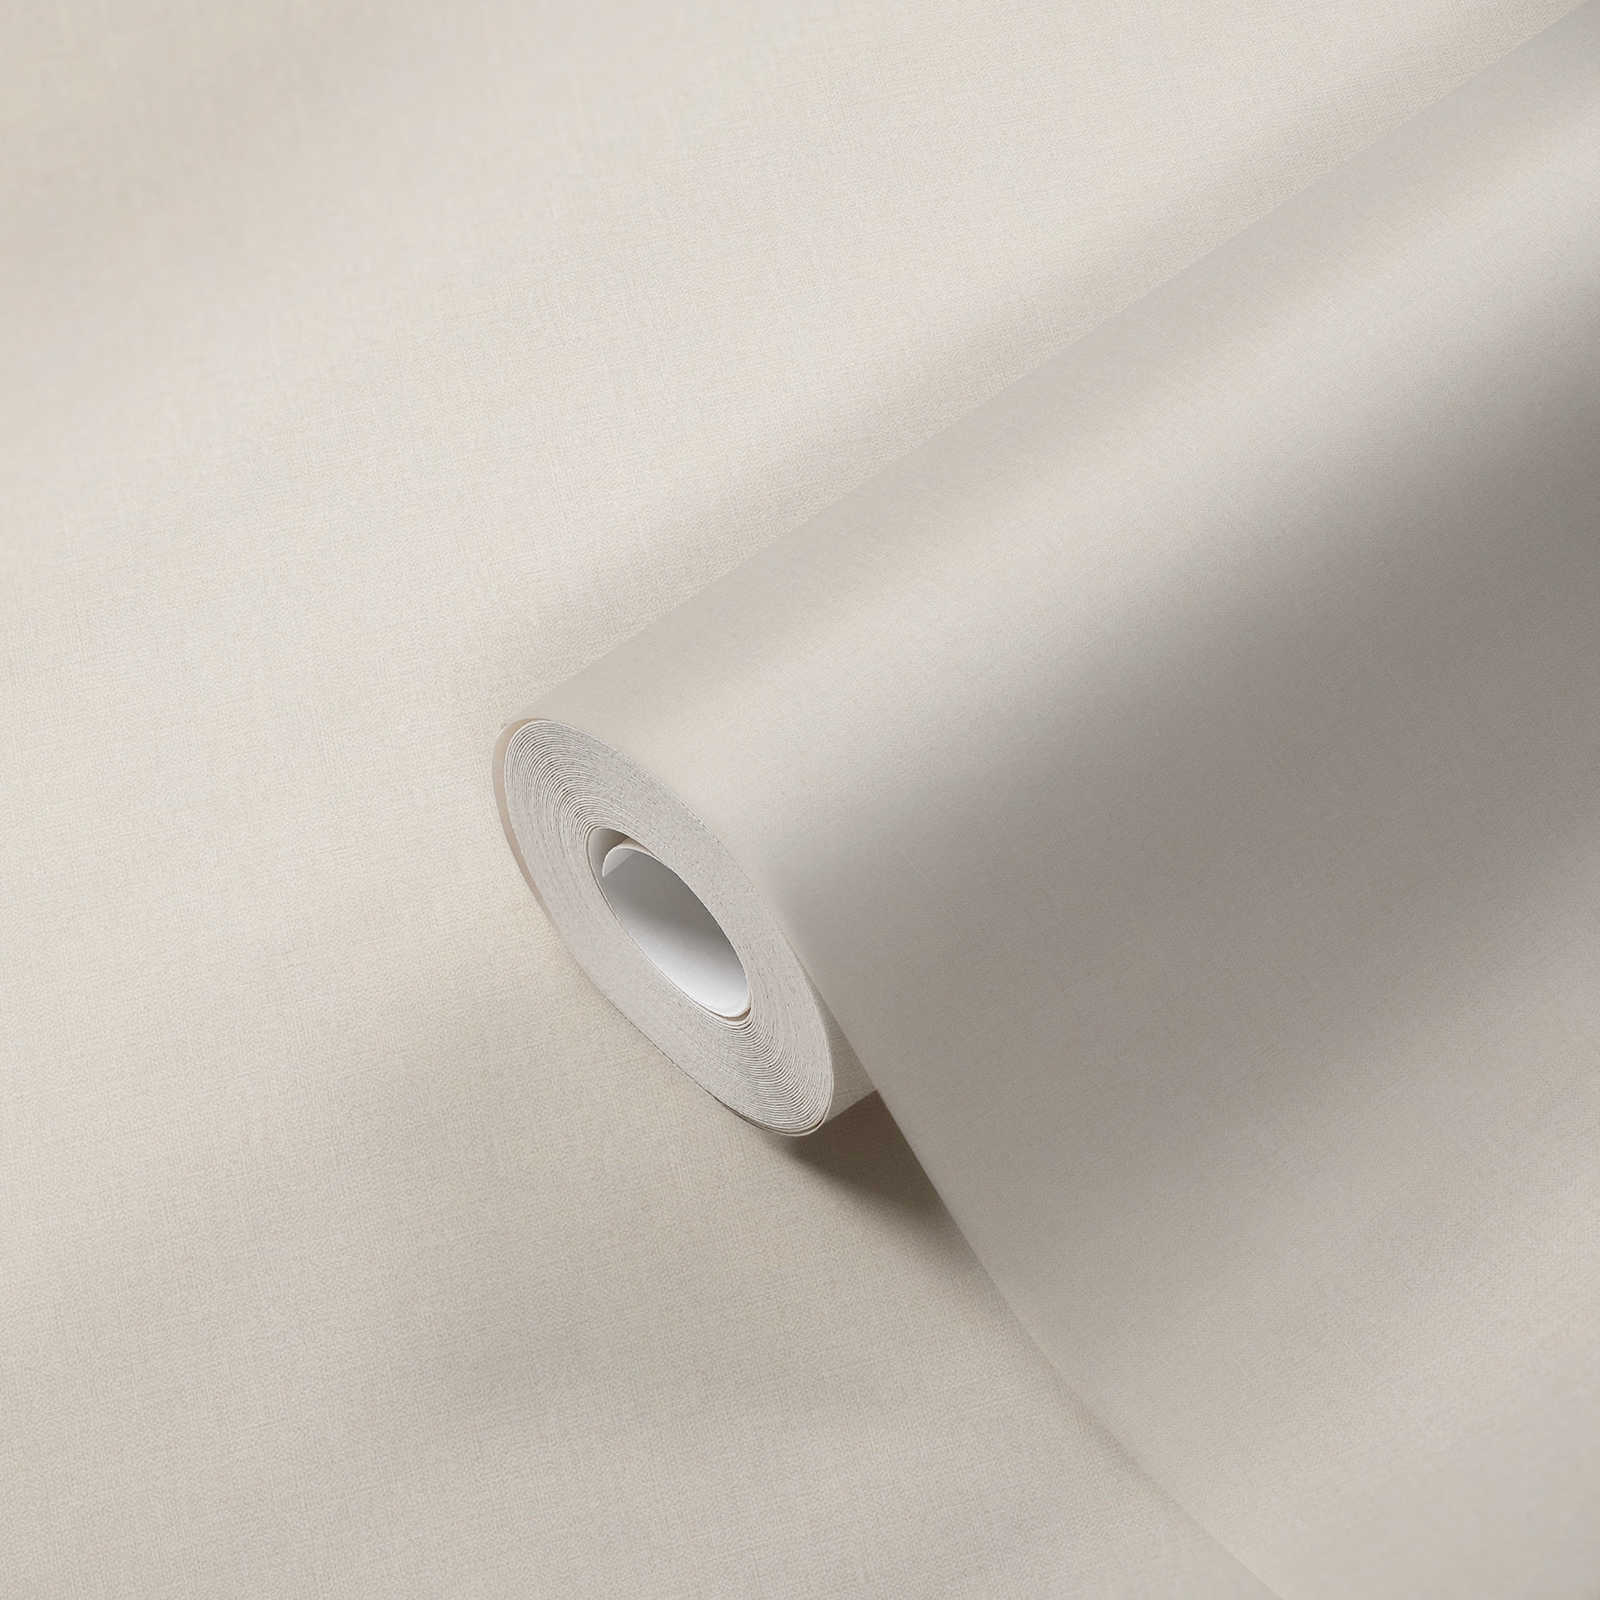             Papier peint intissé uni avec légère brillance - crème, gris
        